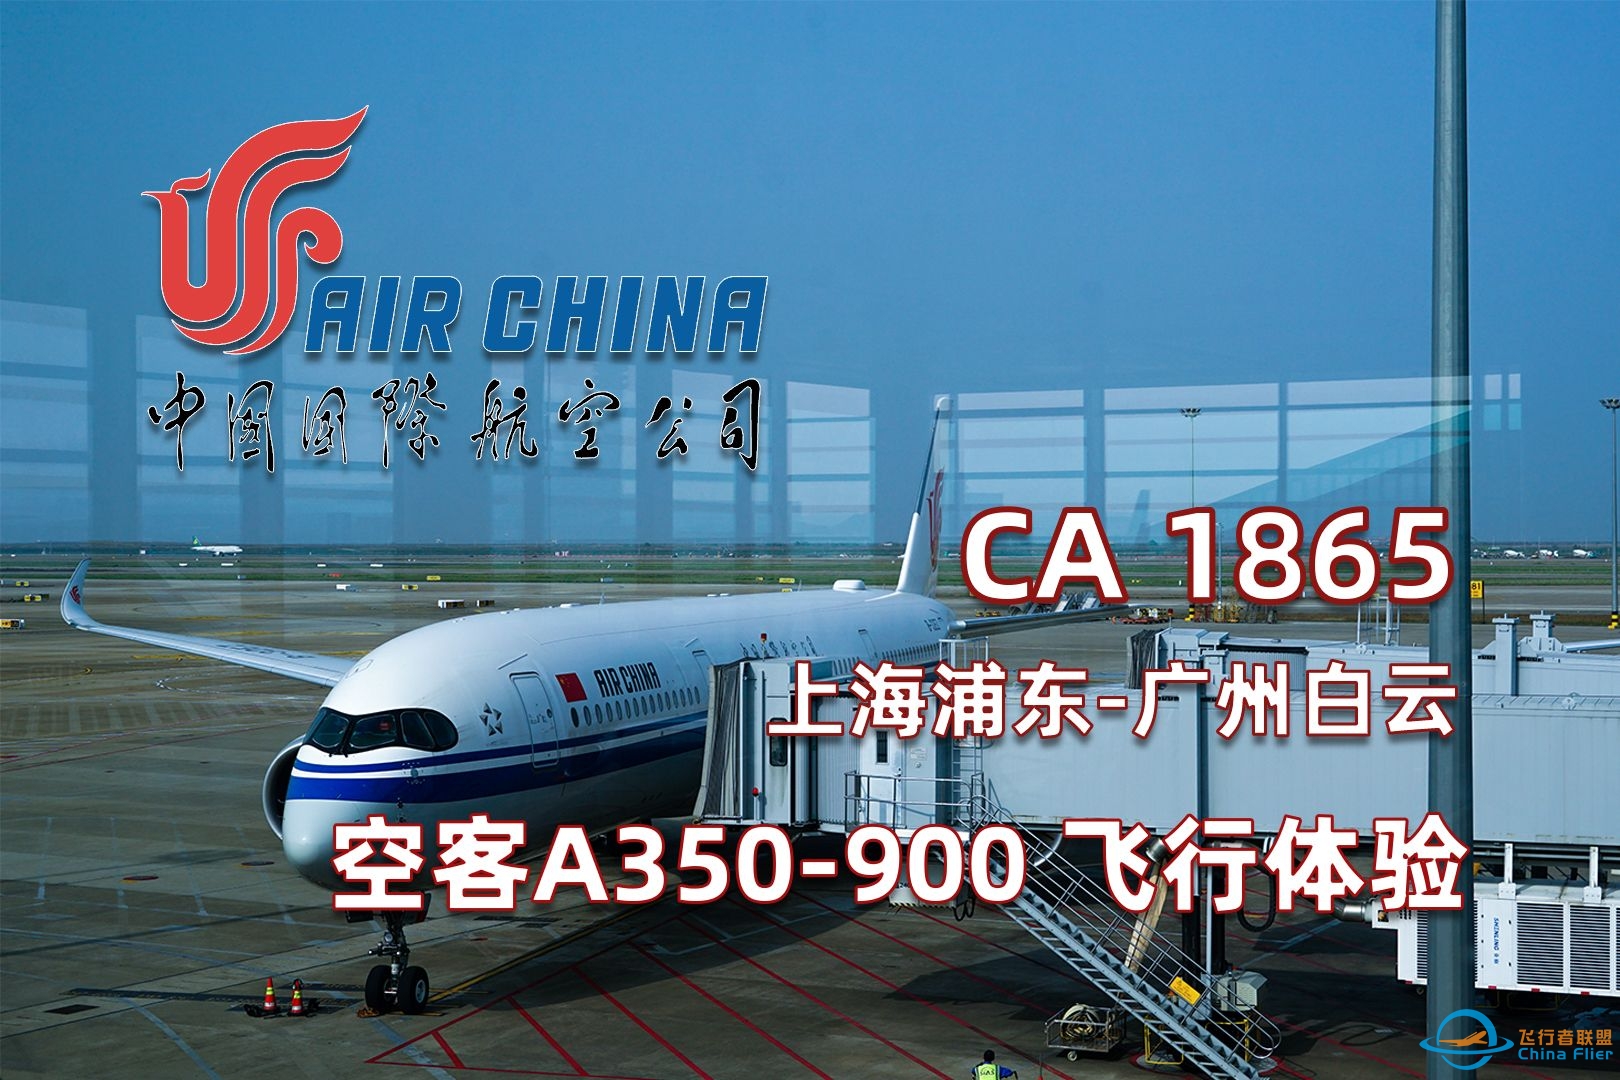 【飞行体验】中国国际航空 CA1865 上海浦东-广州白云 PVG-CAN 飞行记录-3805 